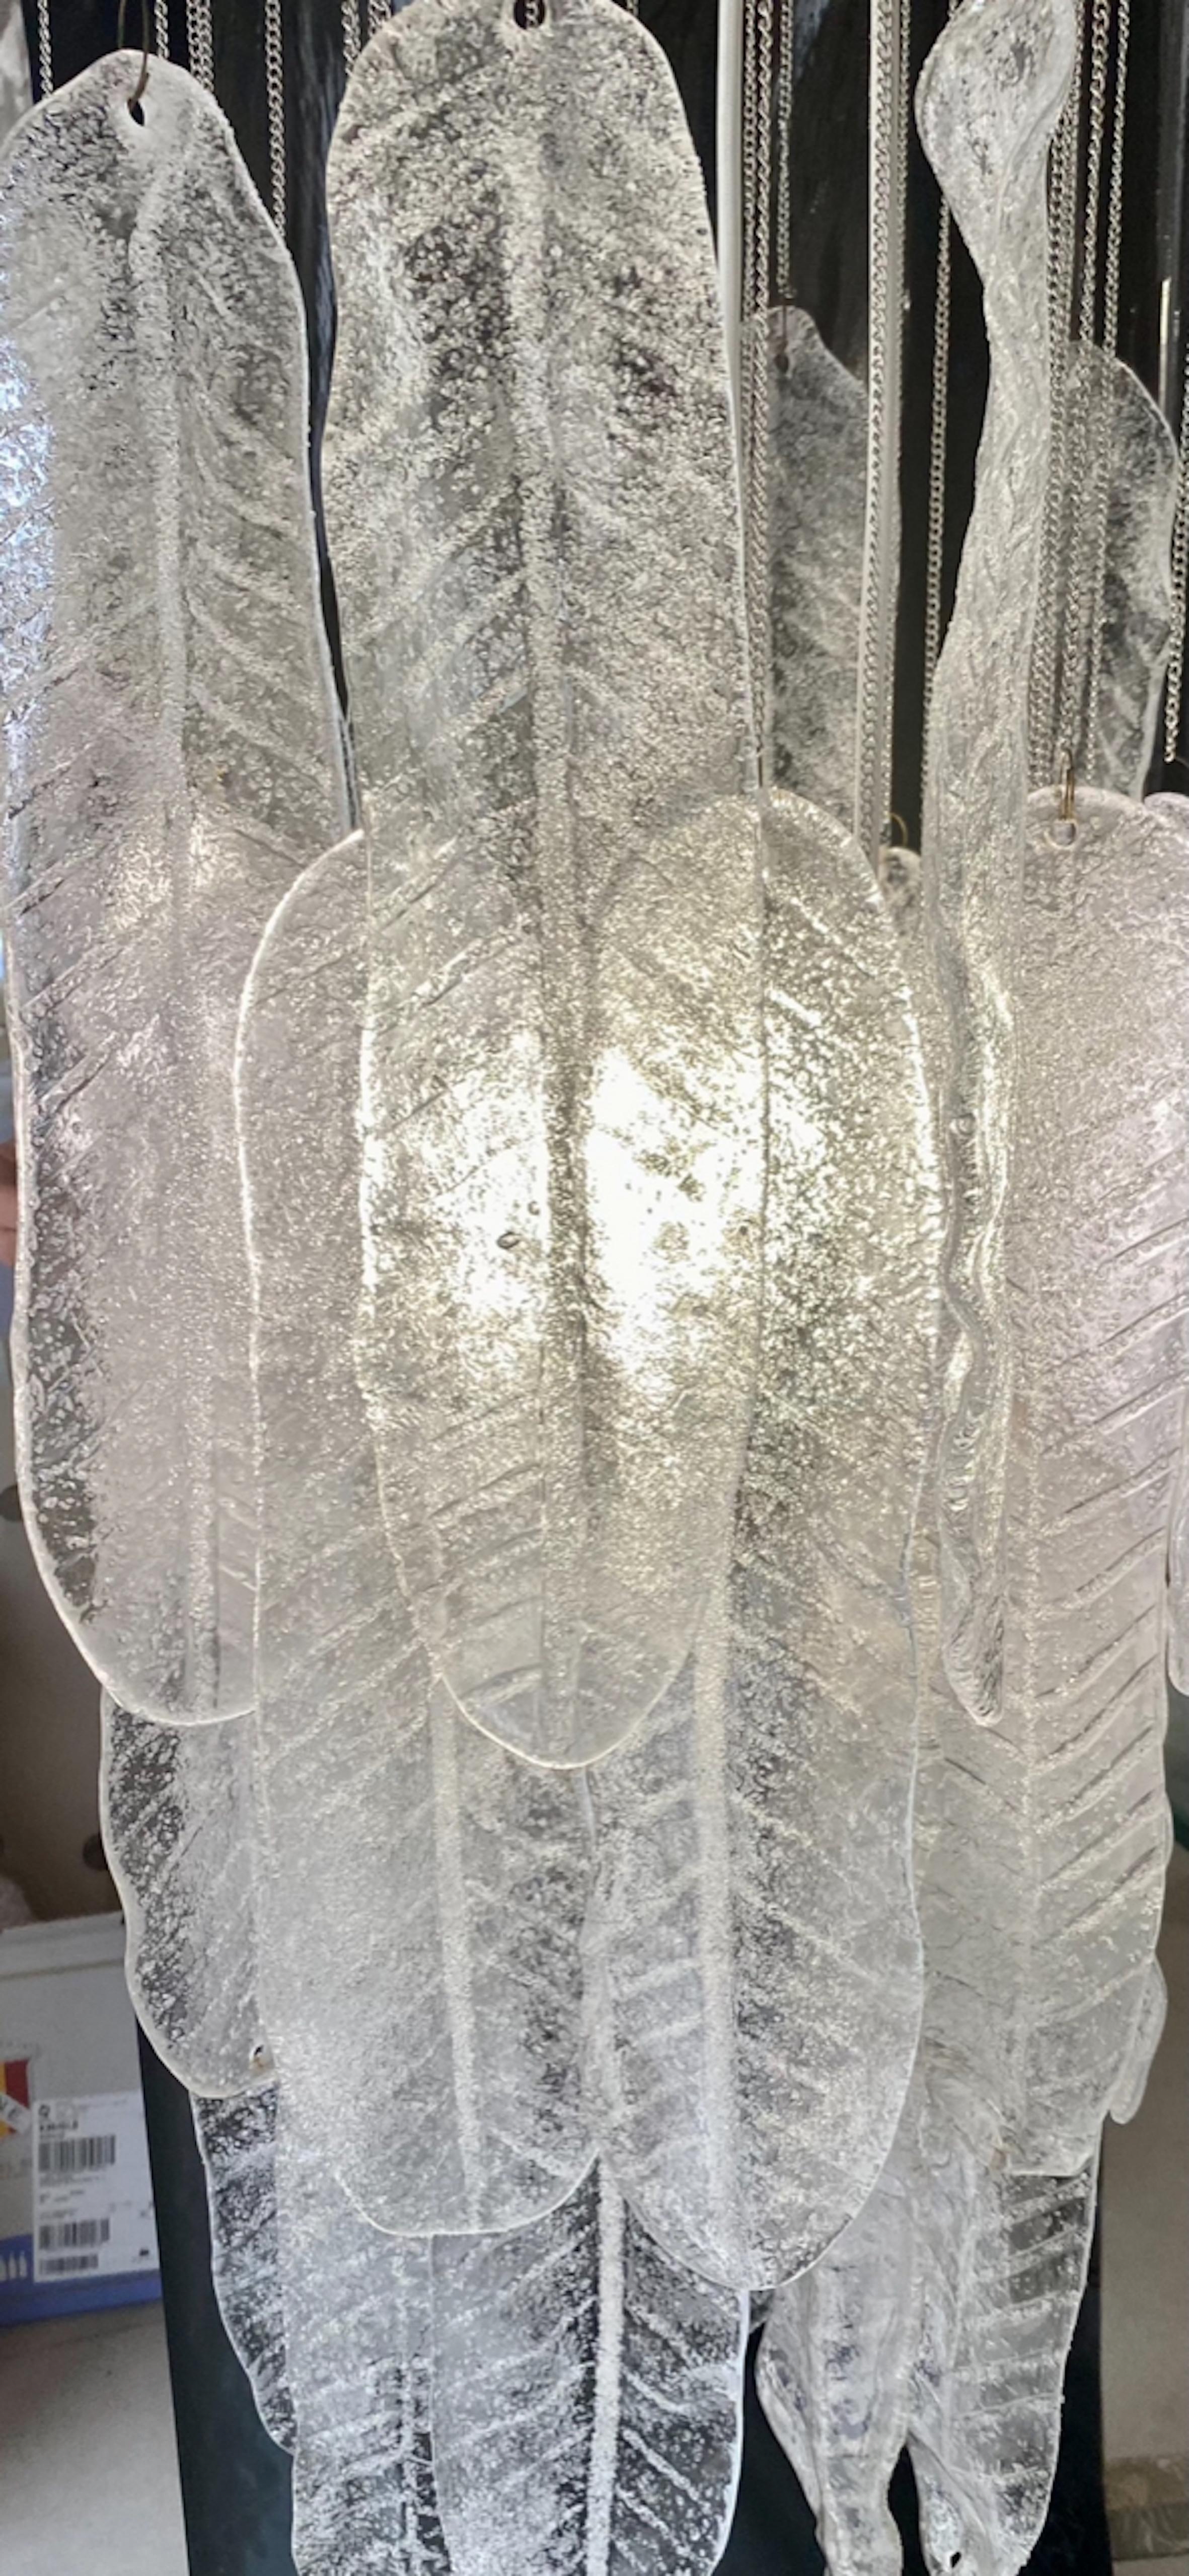 Außergewöhnliche Kaskade Anhänger mit Blättern Glas Murano überdimensioniert um 30 cm mit CHROME Struktur. Das Design und die Qualität des Glases machen aus diesem Stück das Beste des italienischen Designs.
Diese einzigartige Mazzega Kaskade